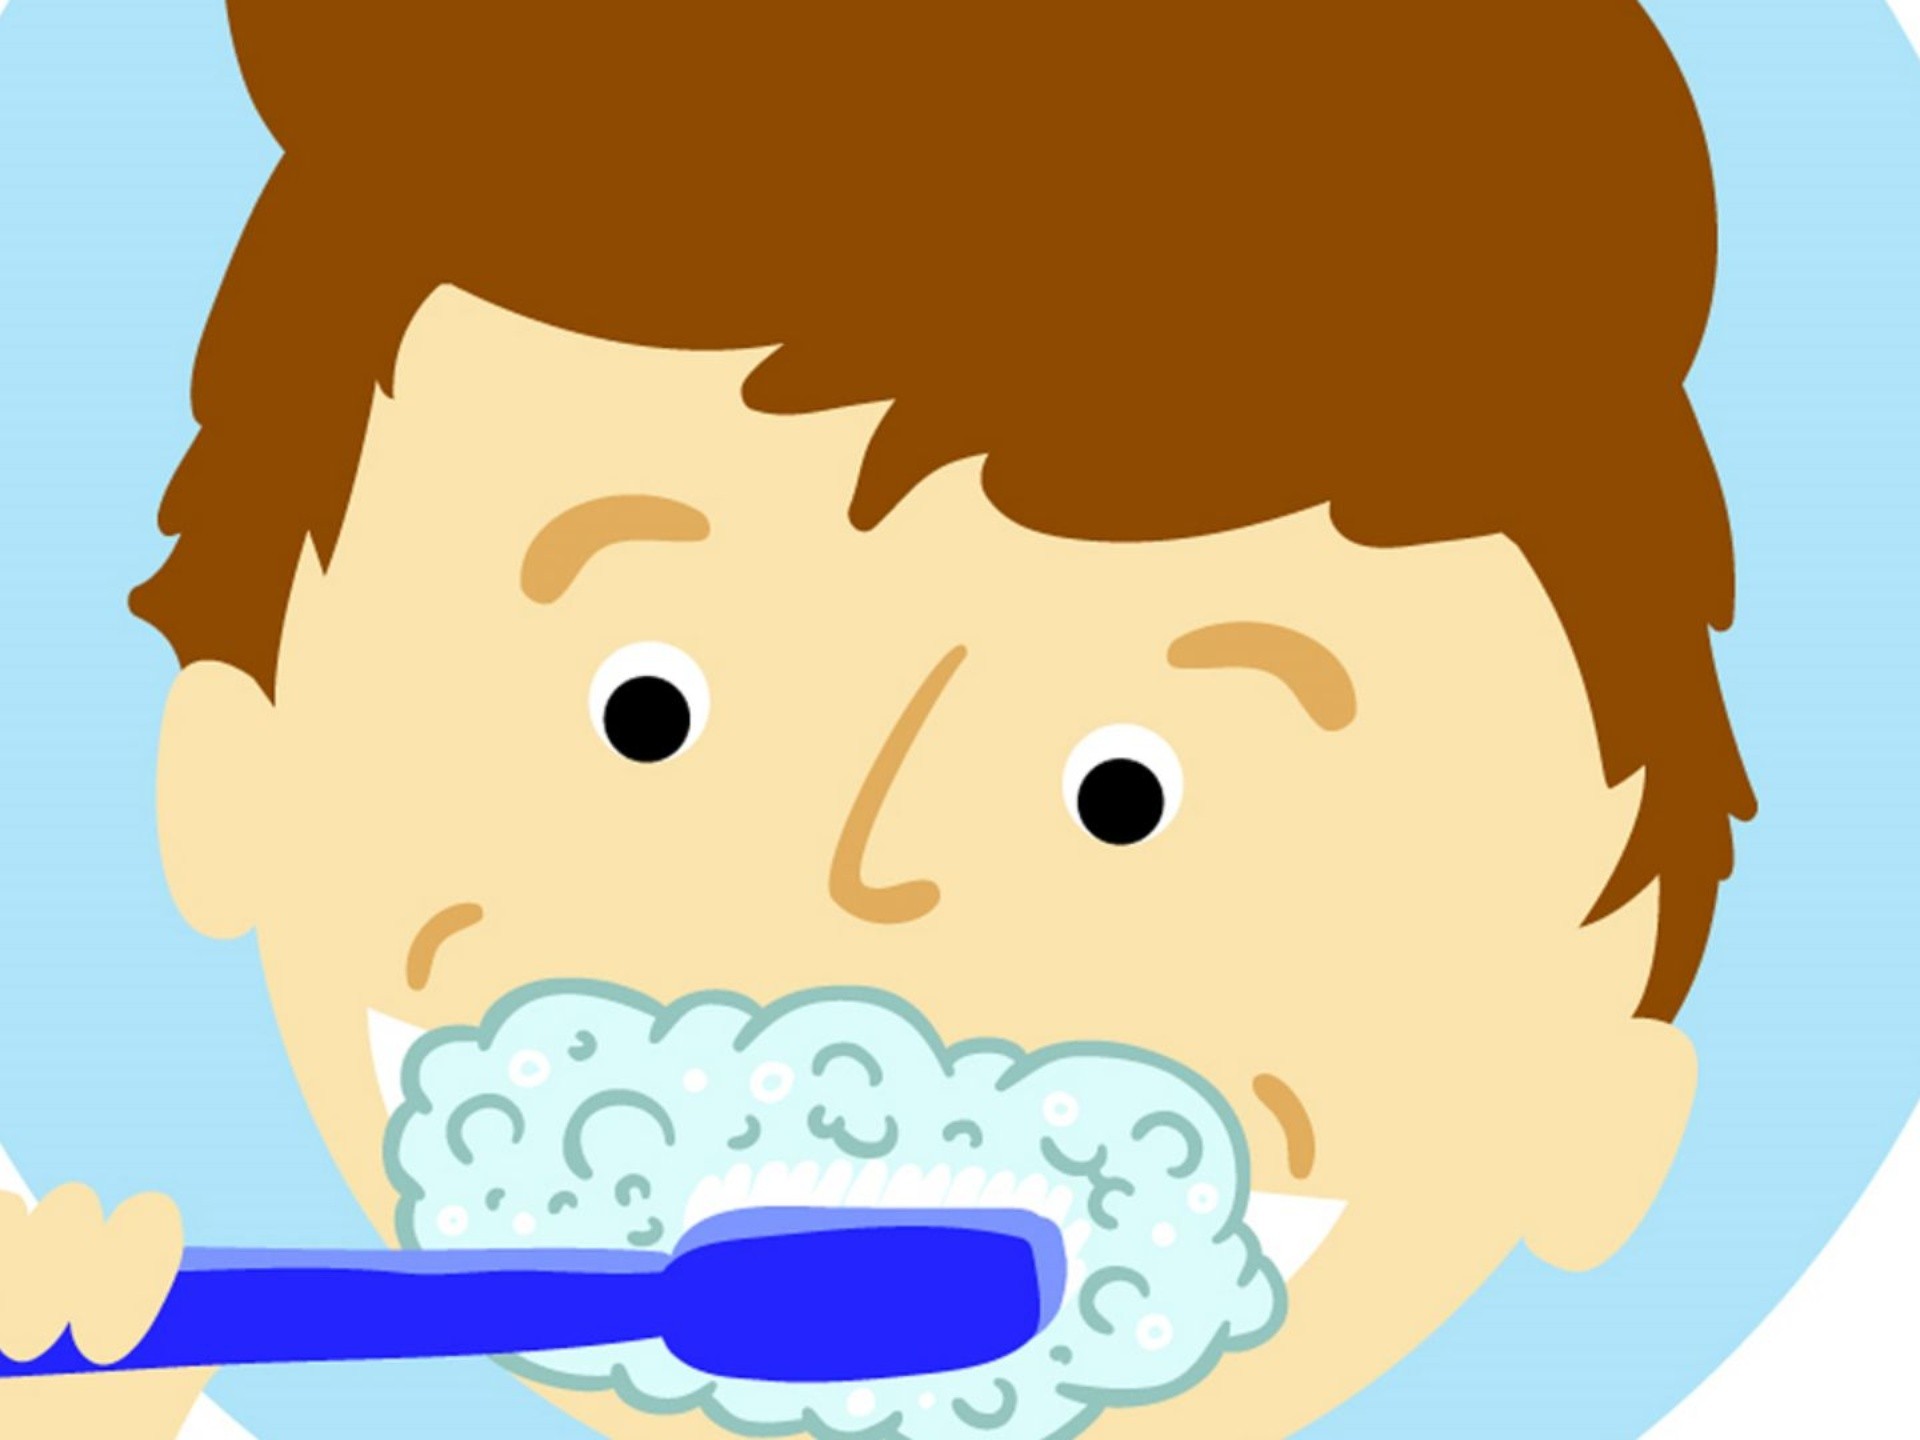 Es recomendable lavar los dientes con agua oxigenada? - UNAM Global